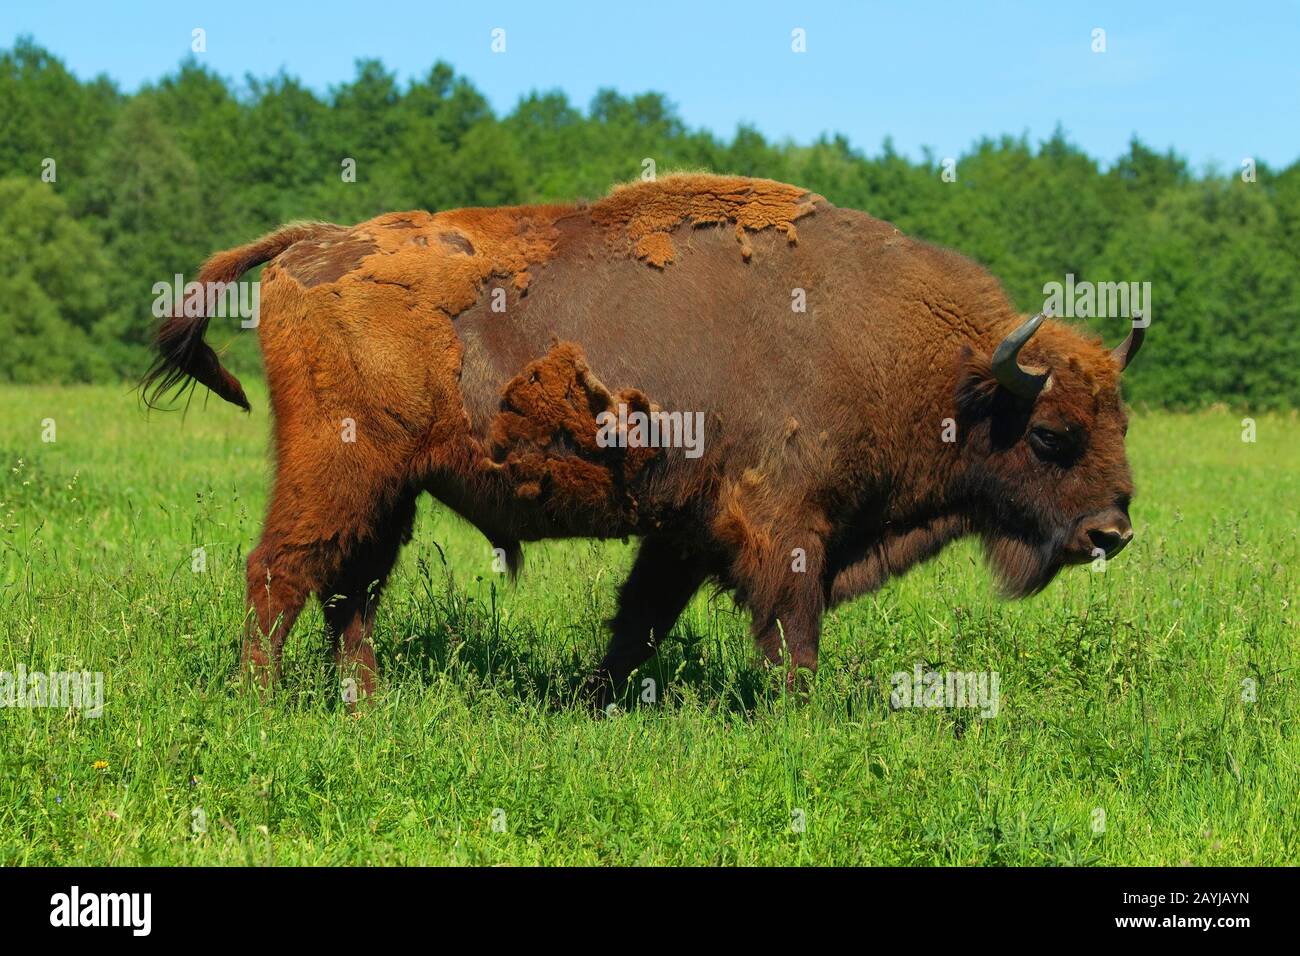 Europäischer Bison, wisent (Bison bonasus), steht auf einer Wiese, Deutschland Stockfoto